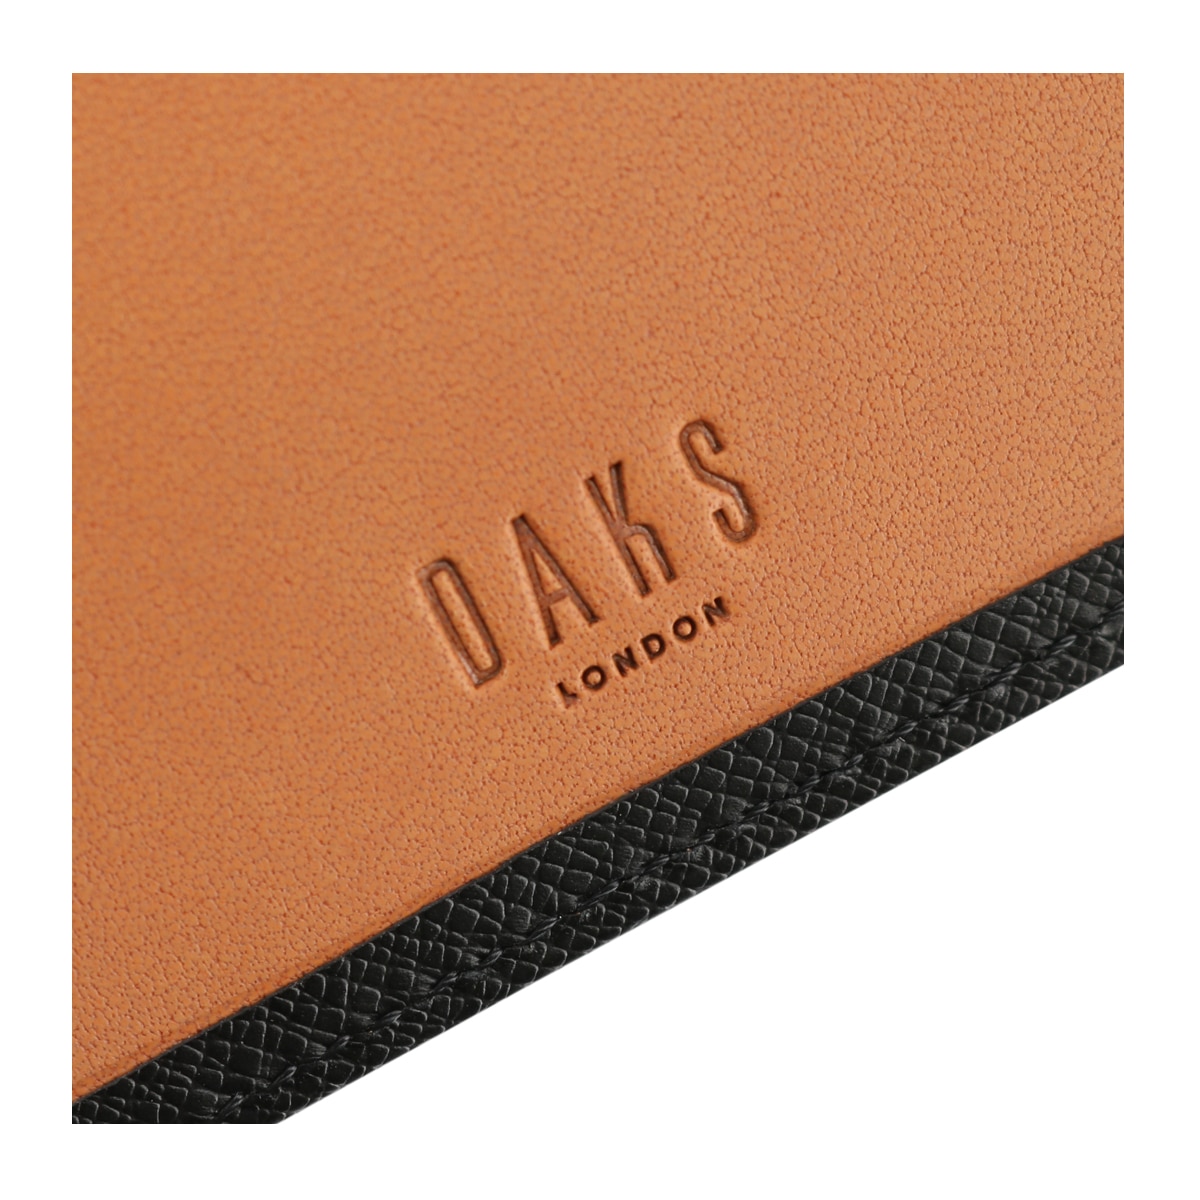 ダックス 二つ折り財布 ラスター メンズ DP35118 DAKS 本革 レザー